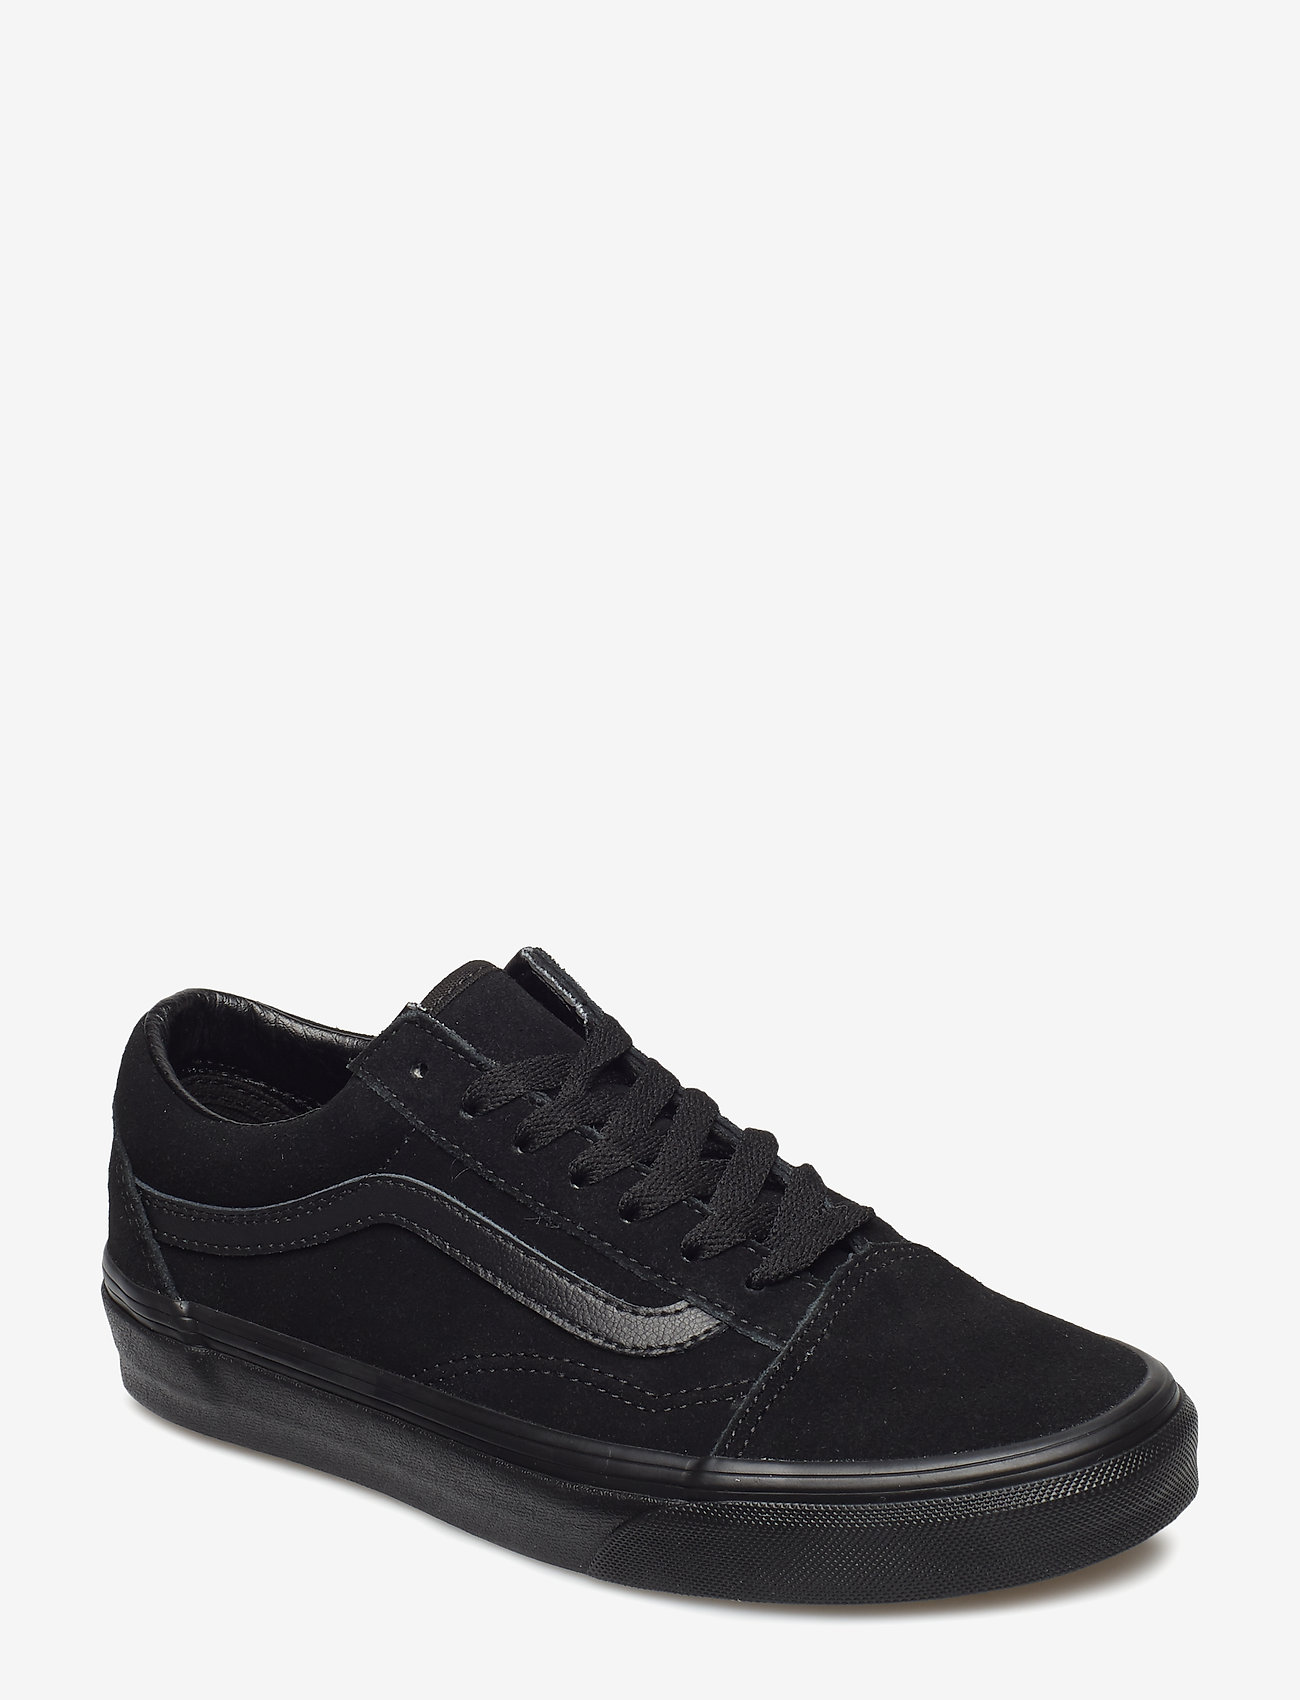 VANS - UA Old Skool - low top sneakers - black/black - 0